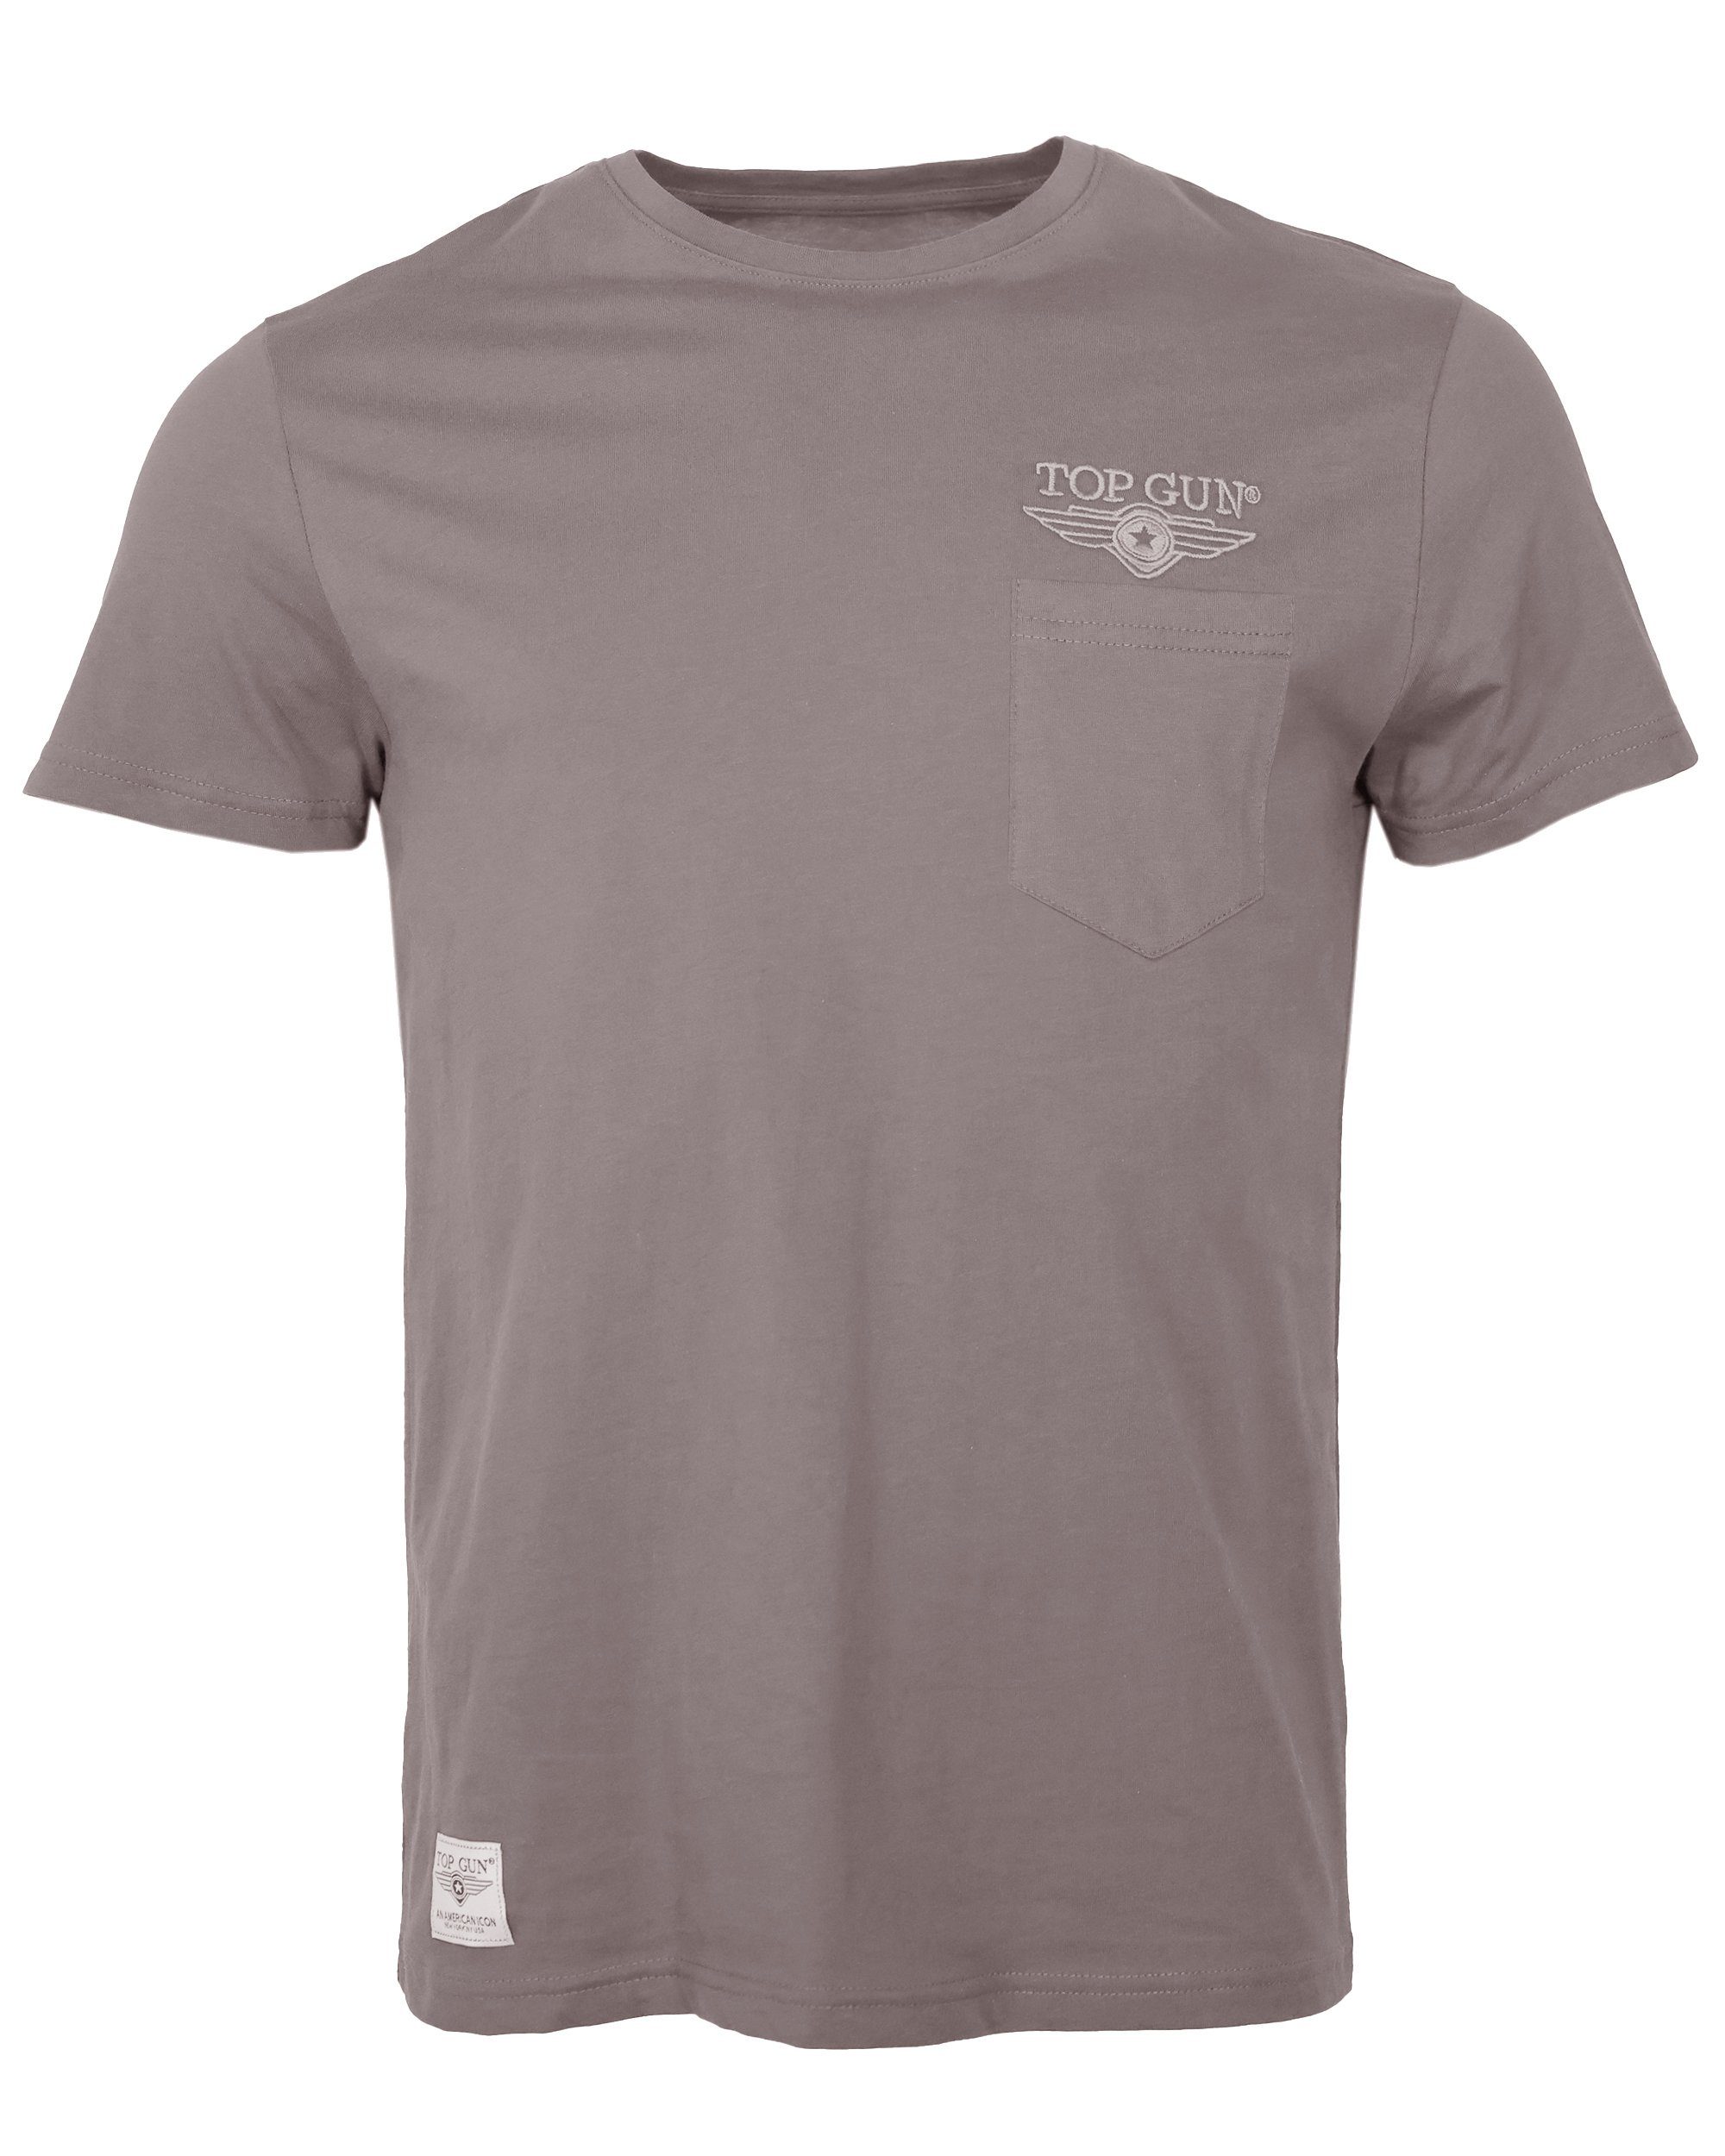 GUN TOP grey TG20213037 T-Shirt